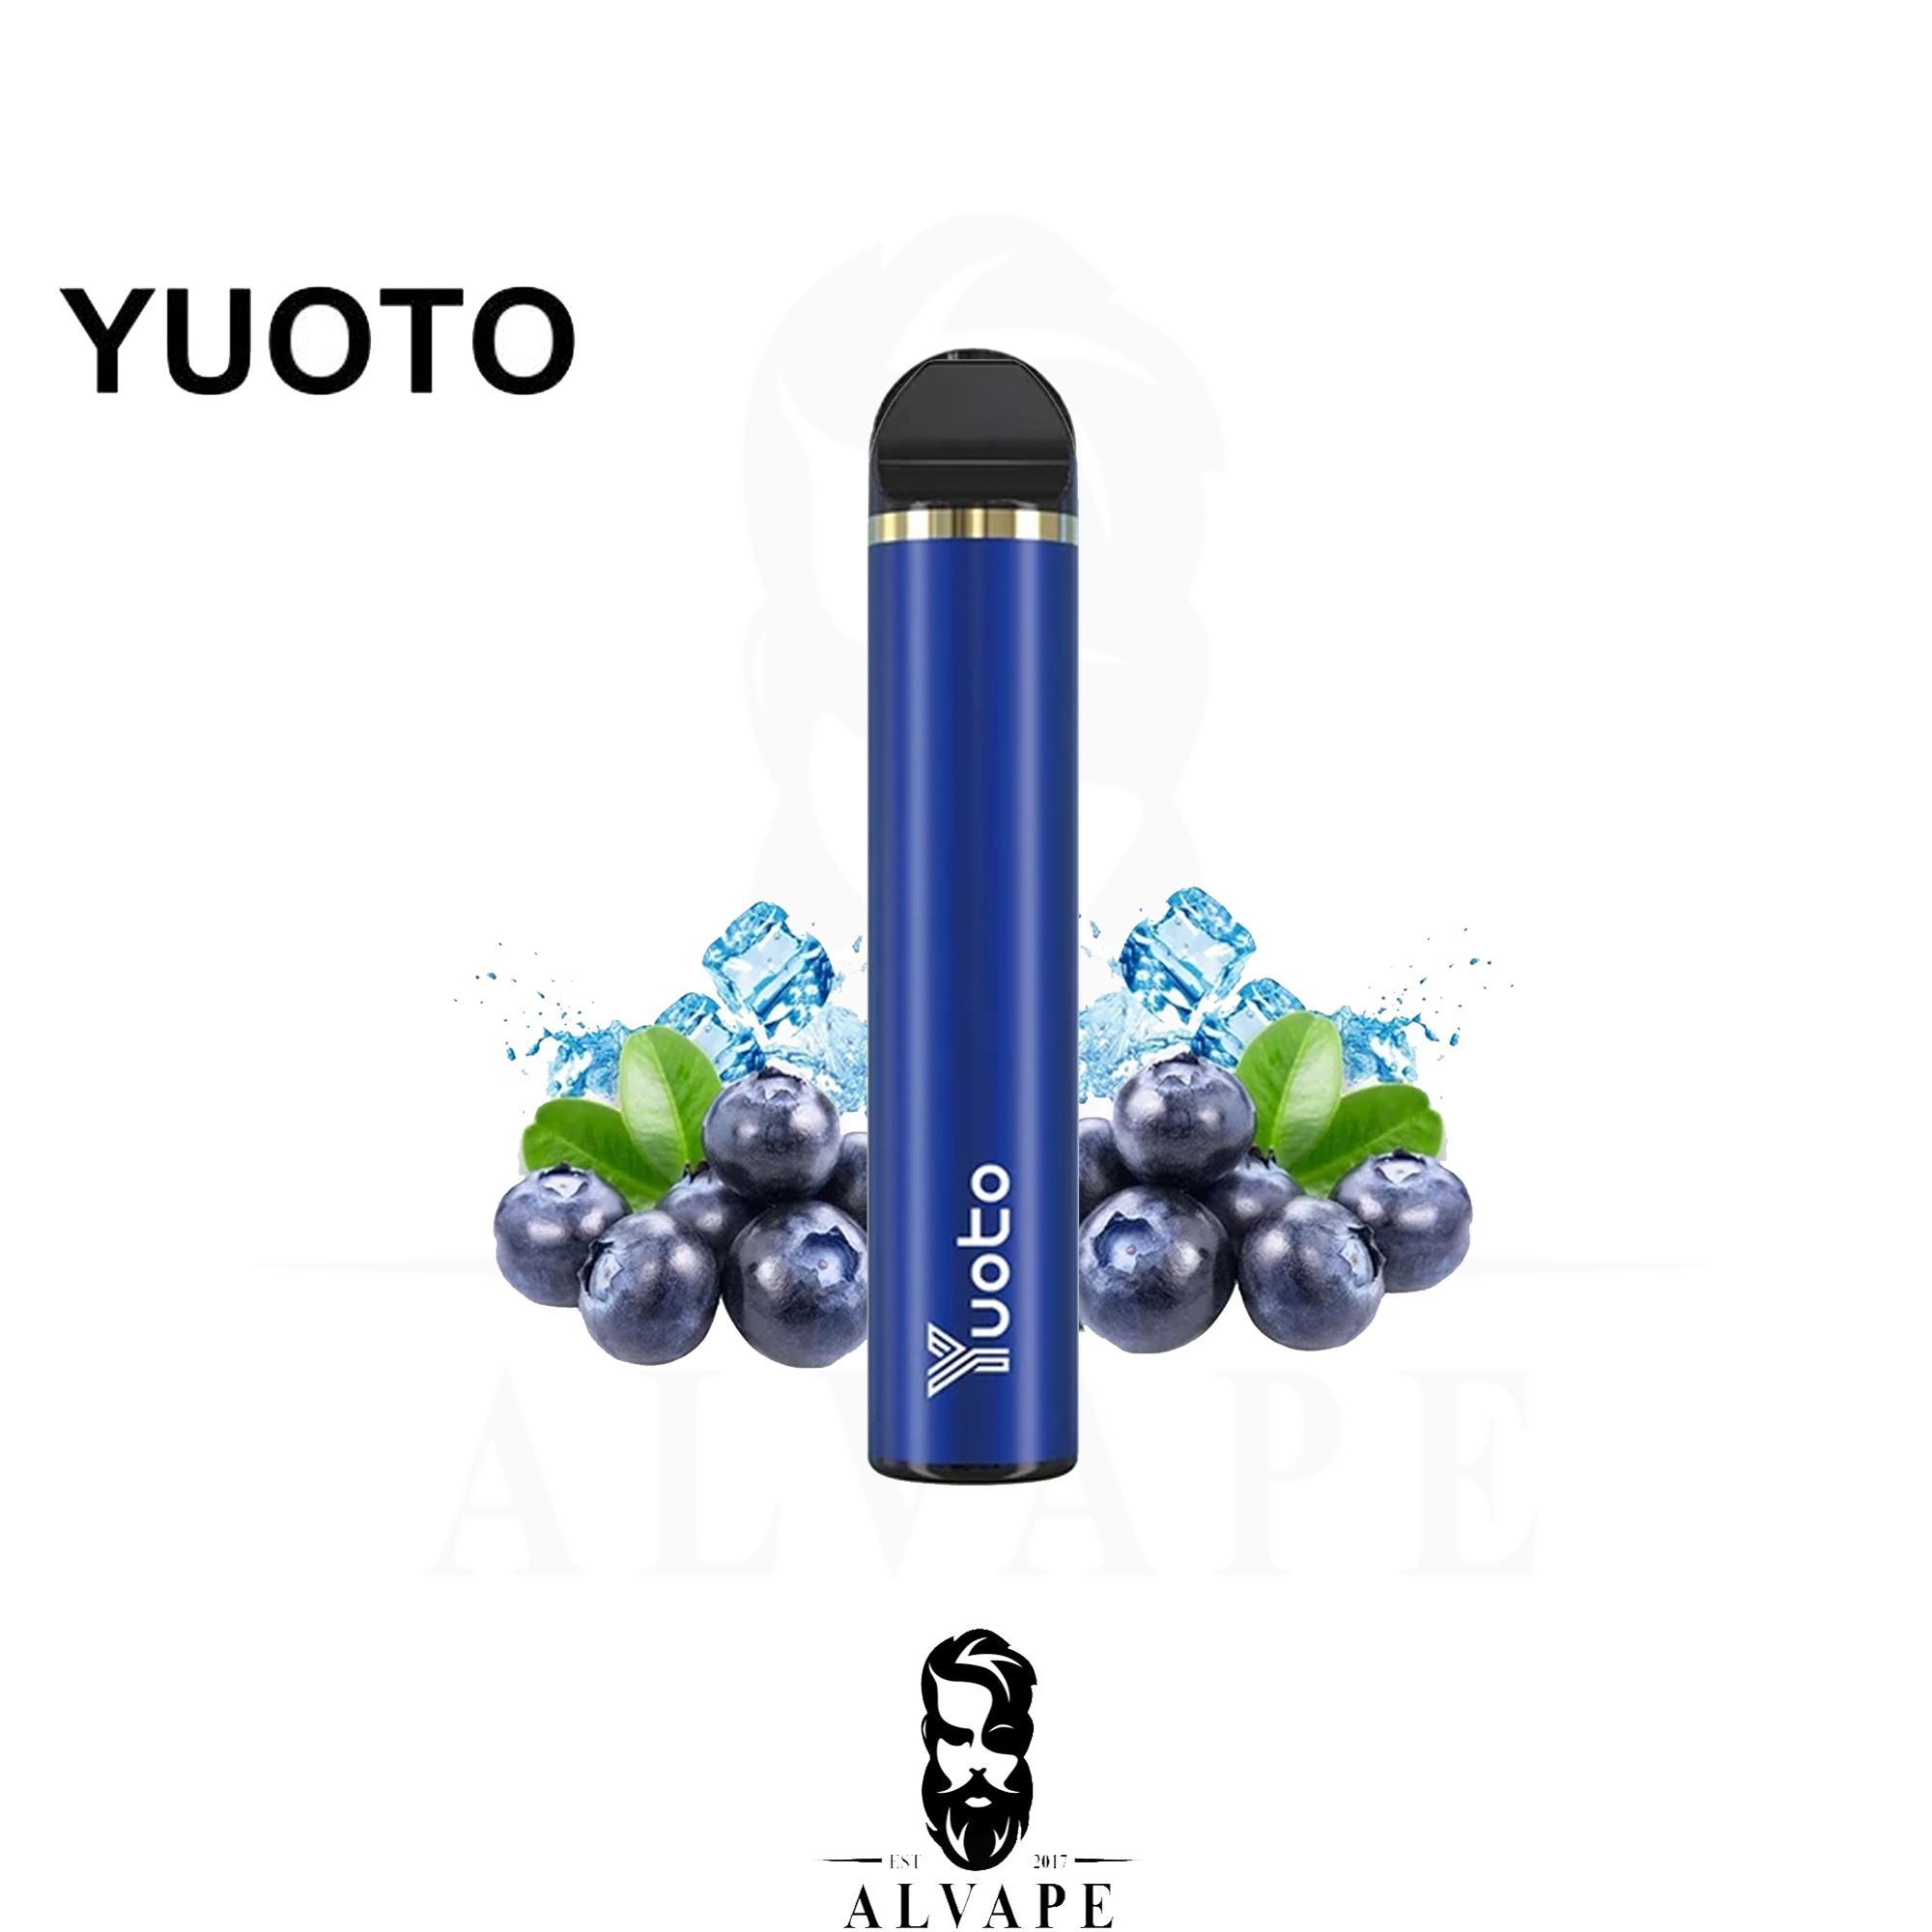 سحبة يوتو توت, سحبة يوتو توت ازرق بارد, سحبة جاهزة 1500 سحبة Yuoto Blueberry